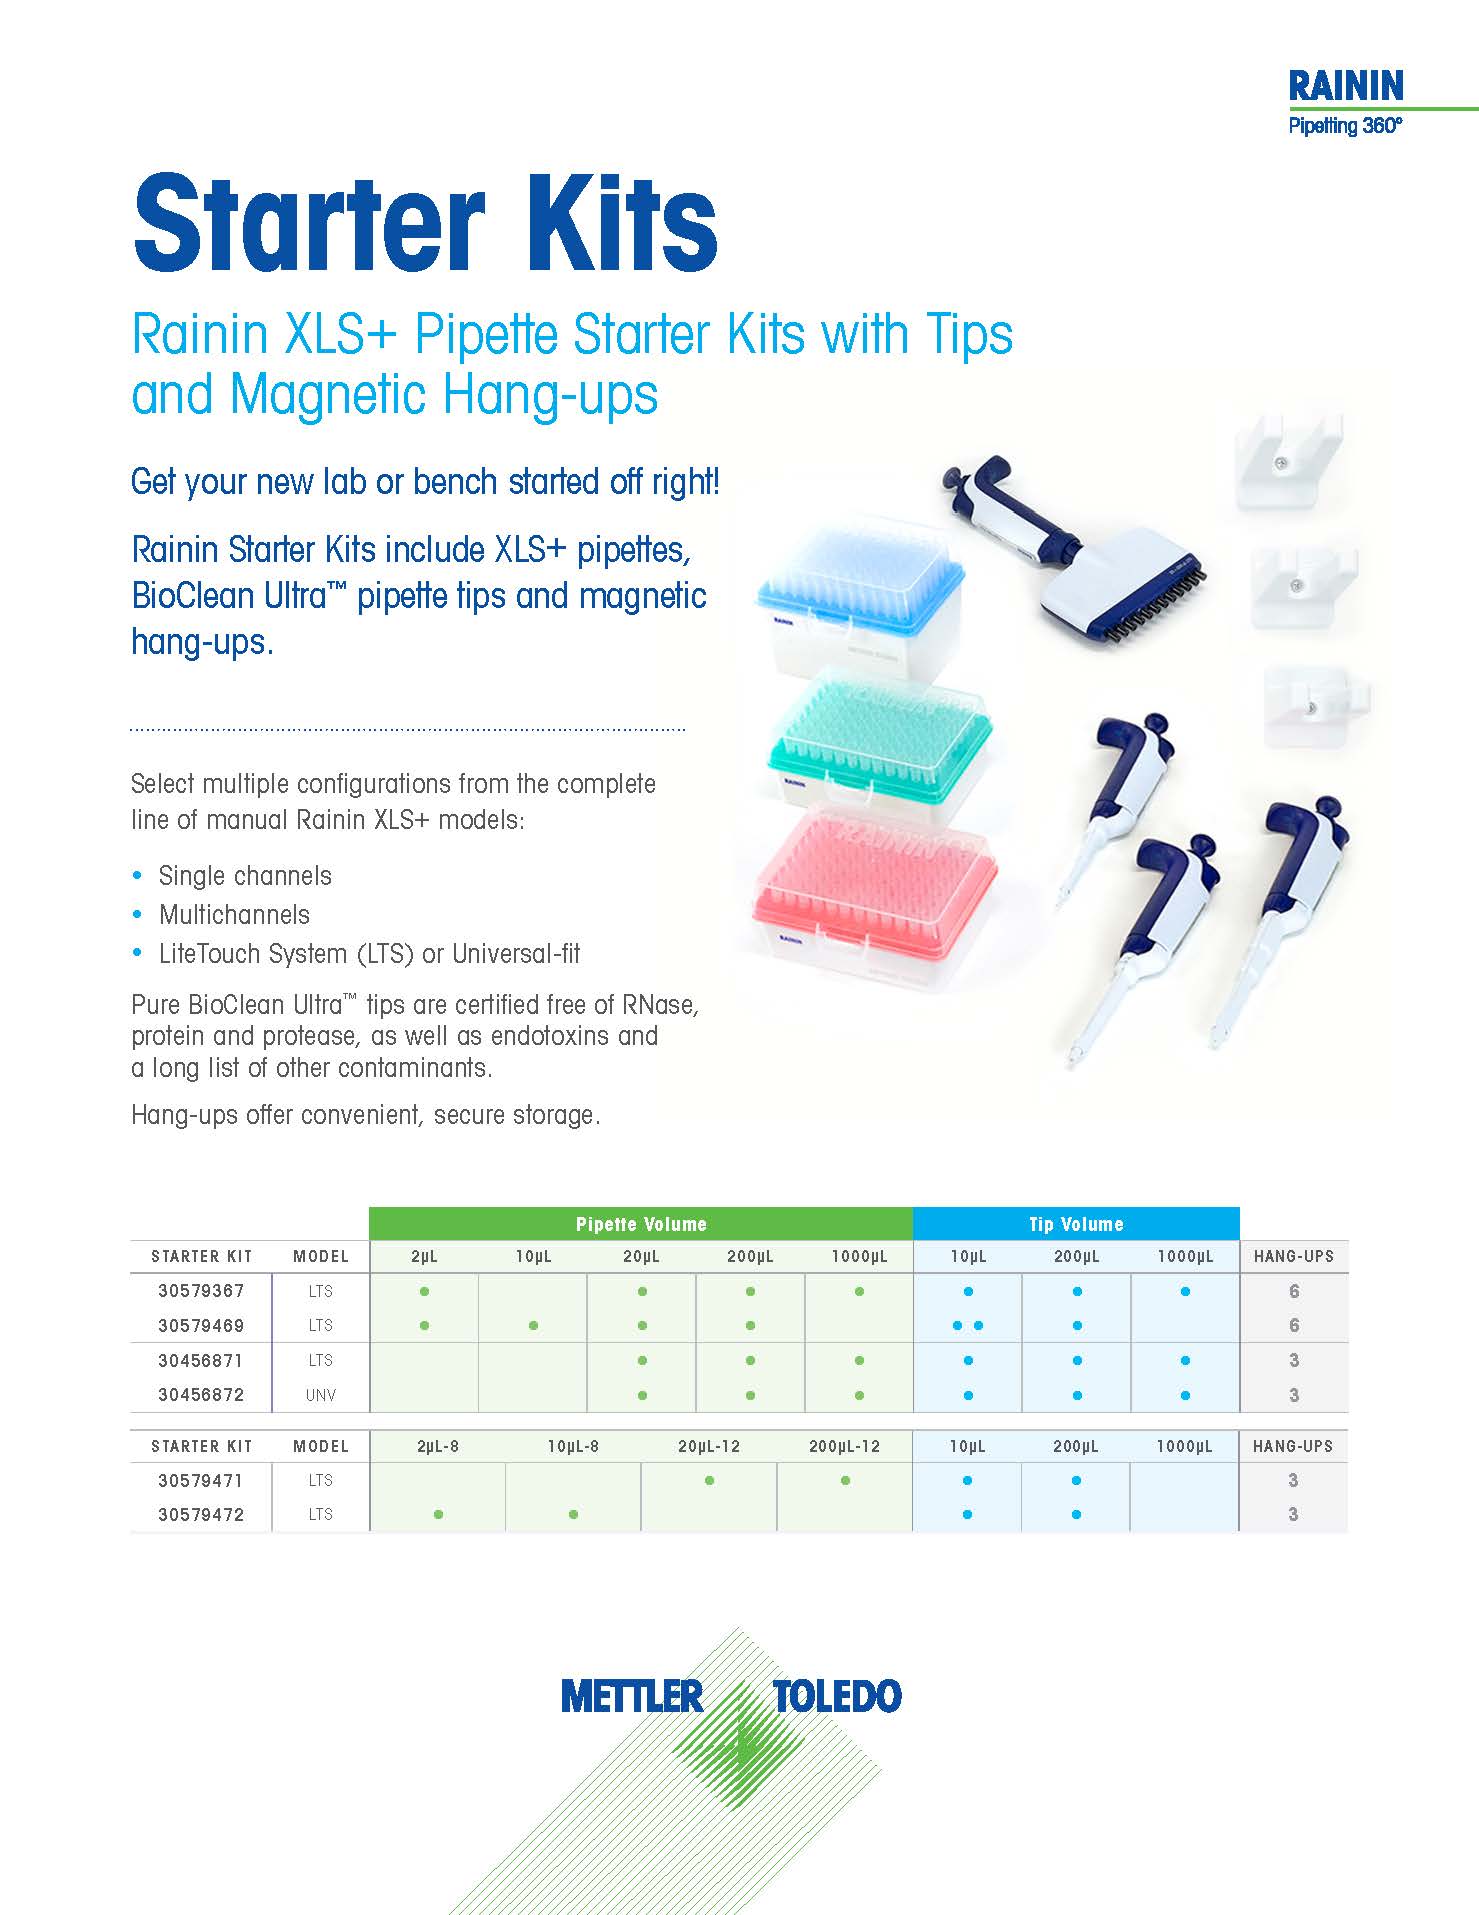 Mettler Toledo_Starter Kit Product Flyer